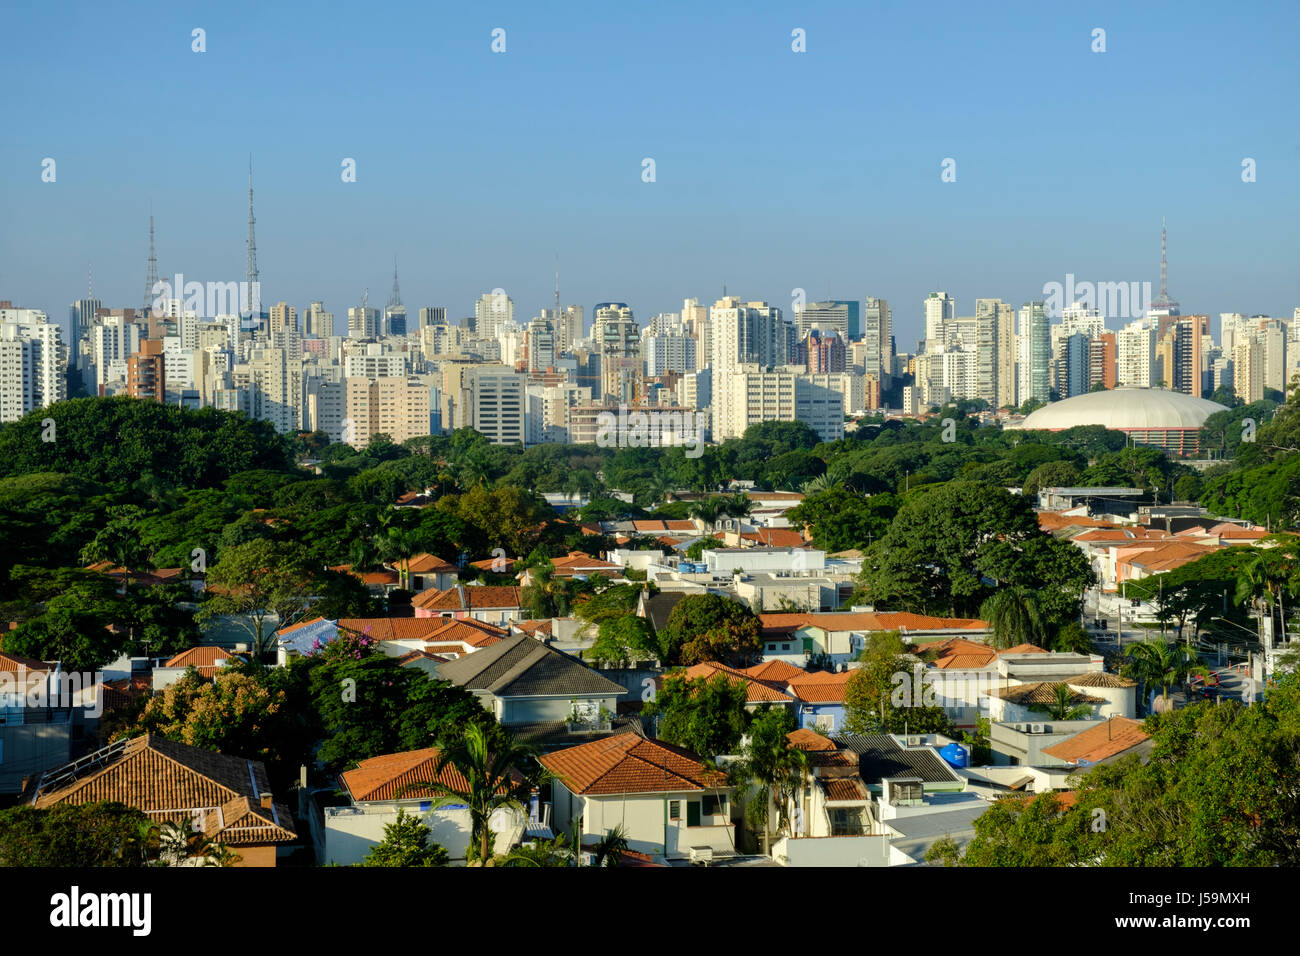 Anzeigen von Wohngebäuden in den wohlhabenden Jardim Paulista (Jardins) und den Wolkenkratzern der Avenida Paulista in Sao Paulo. Stockfoto